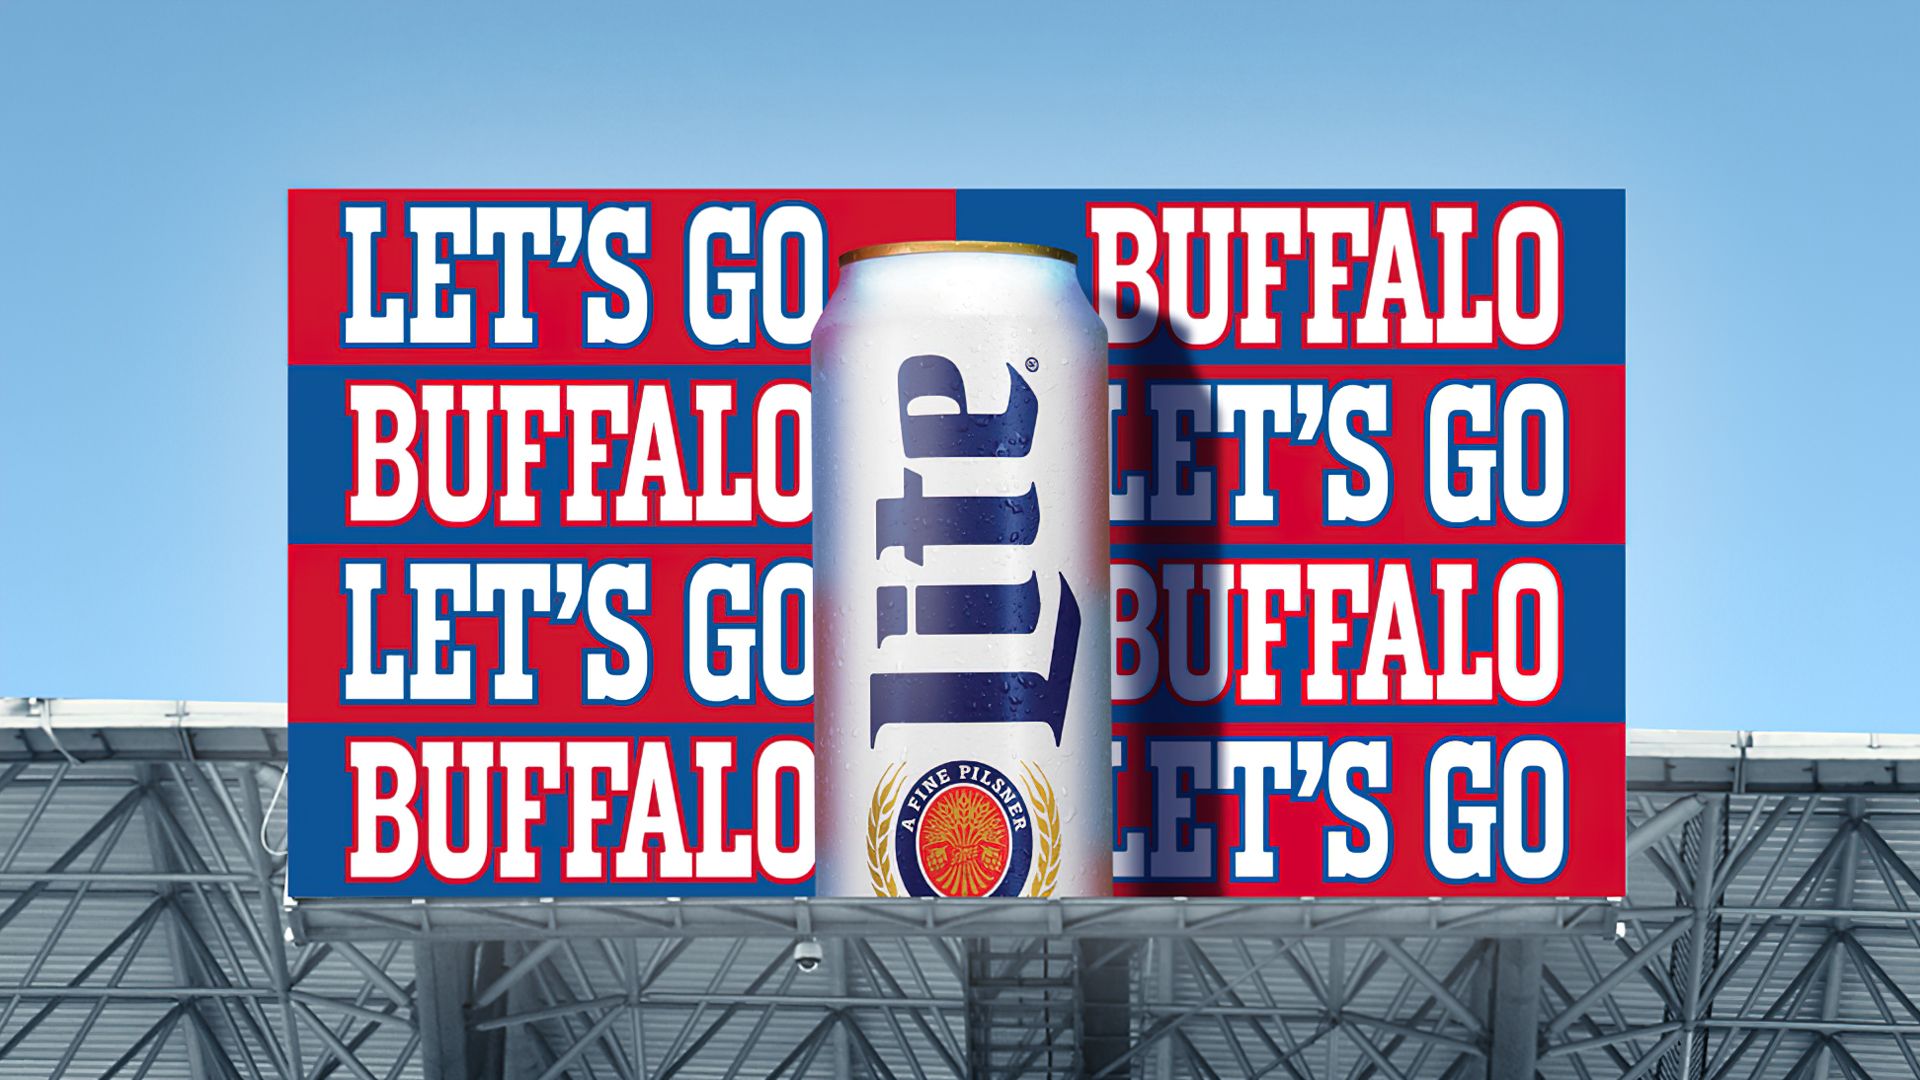 Buffalo Bills - Buy Miller Lite. Get Bills gear! It's